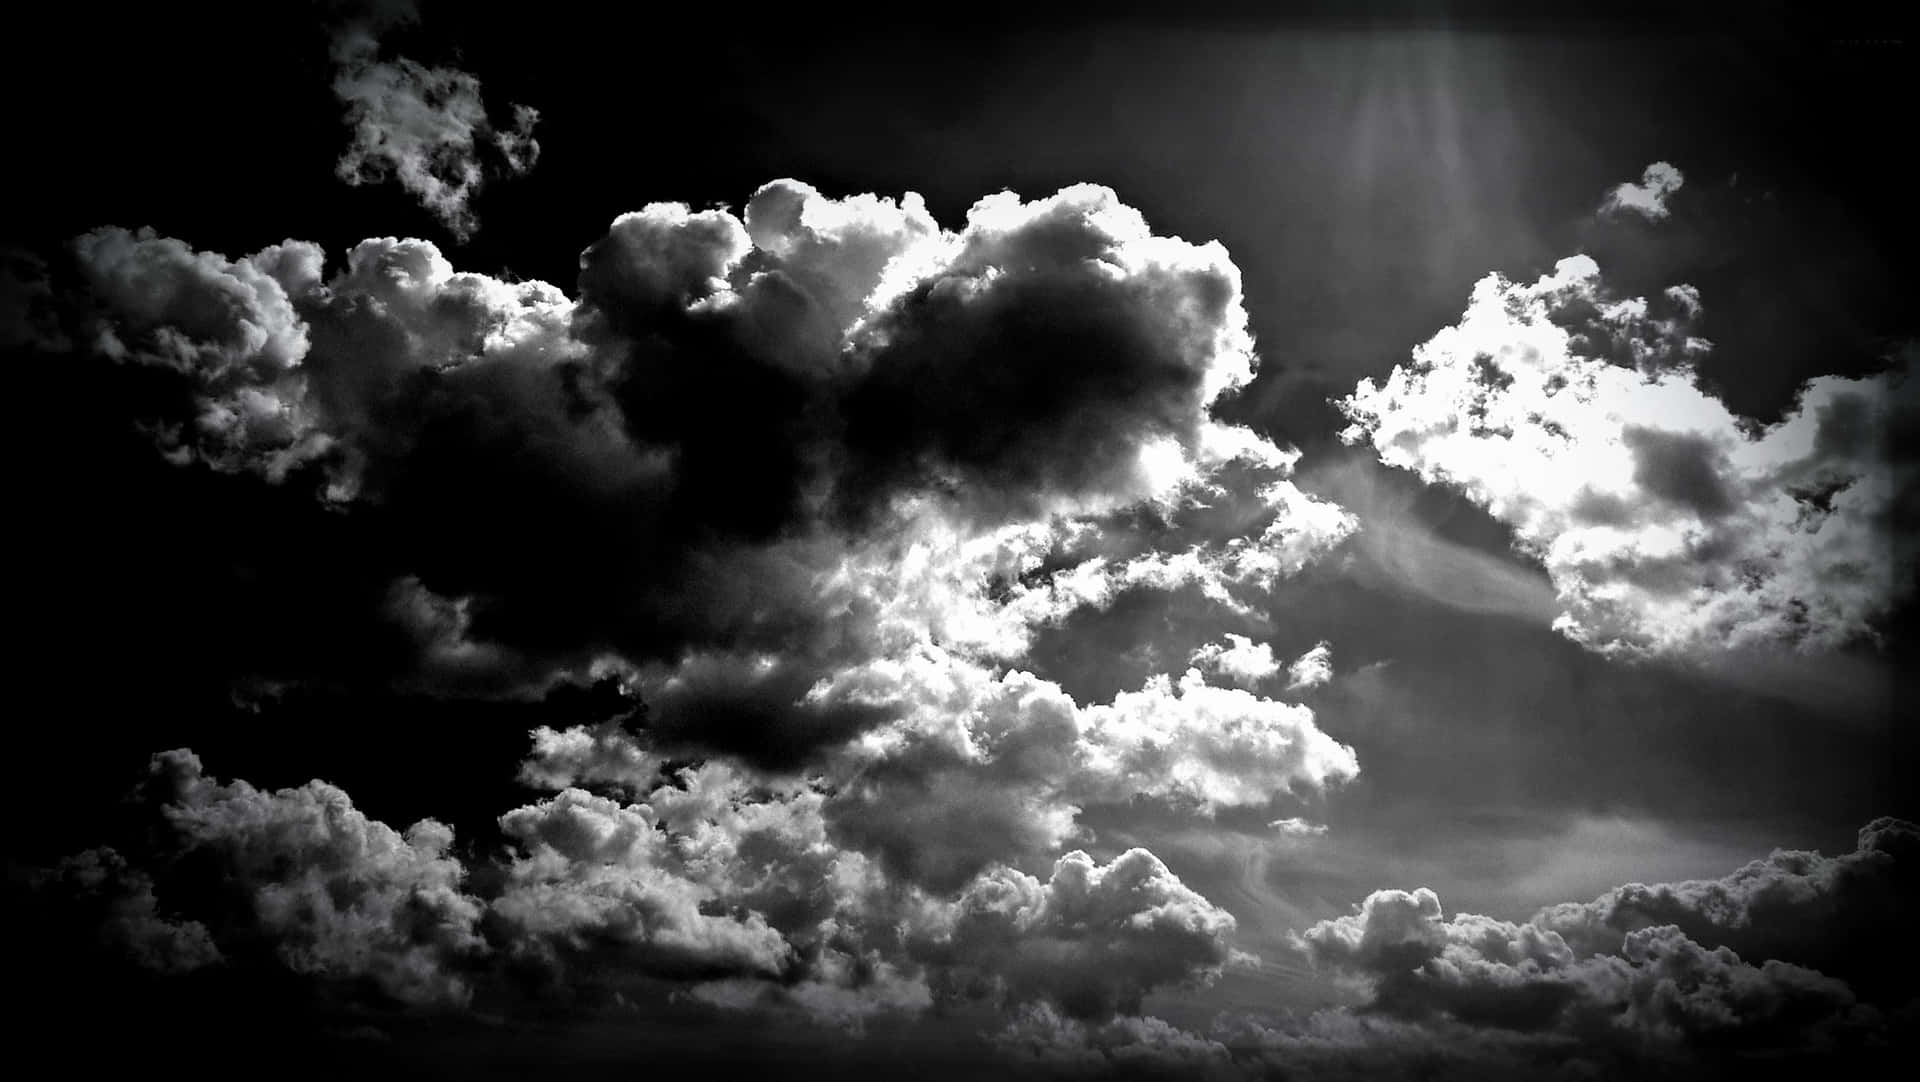 Vislumbrede Luz De Nubes En Blanco Y Negro Fondo de pantalla